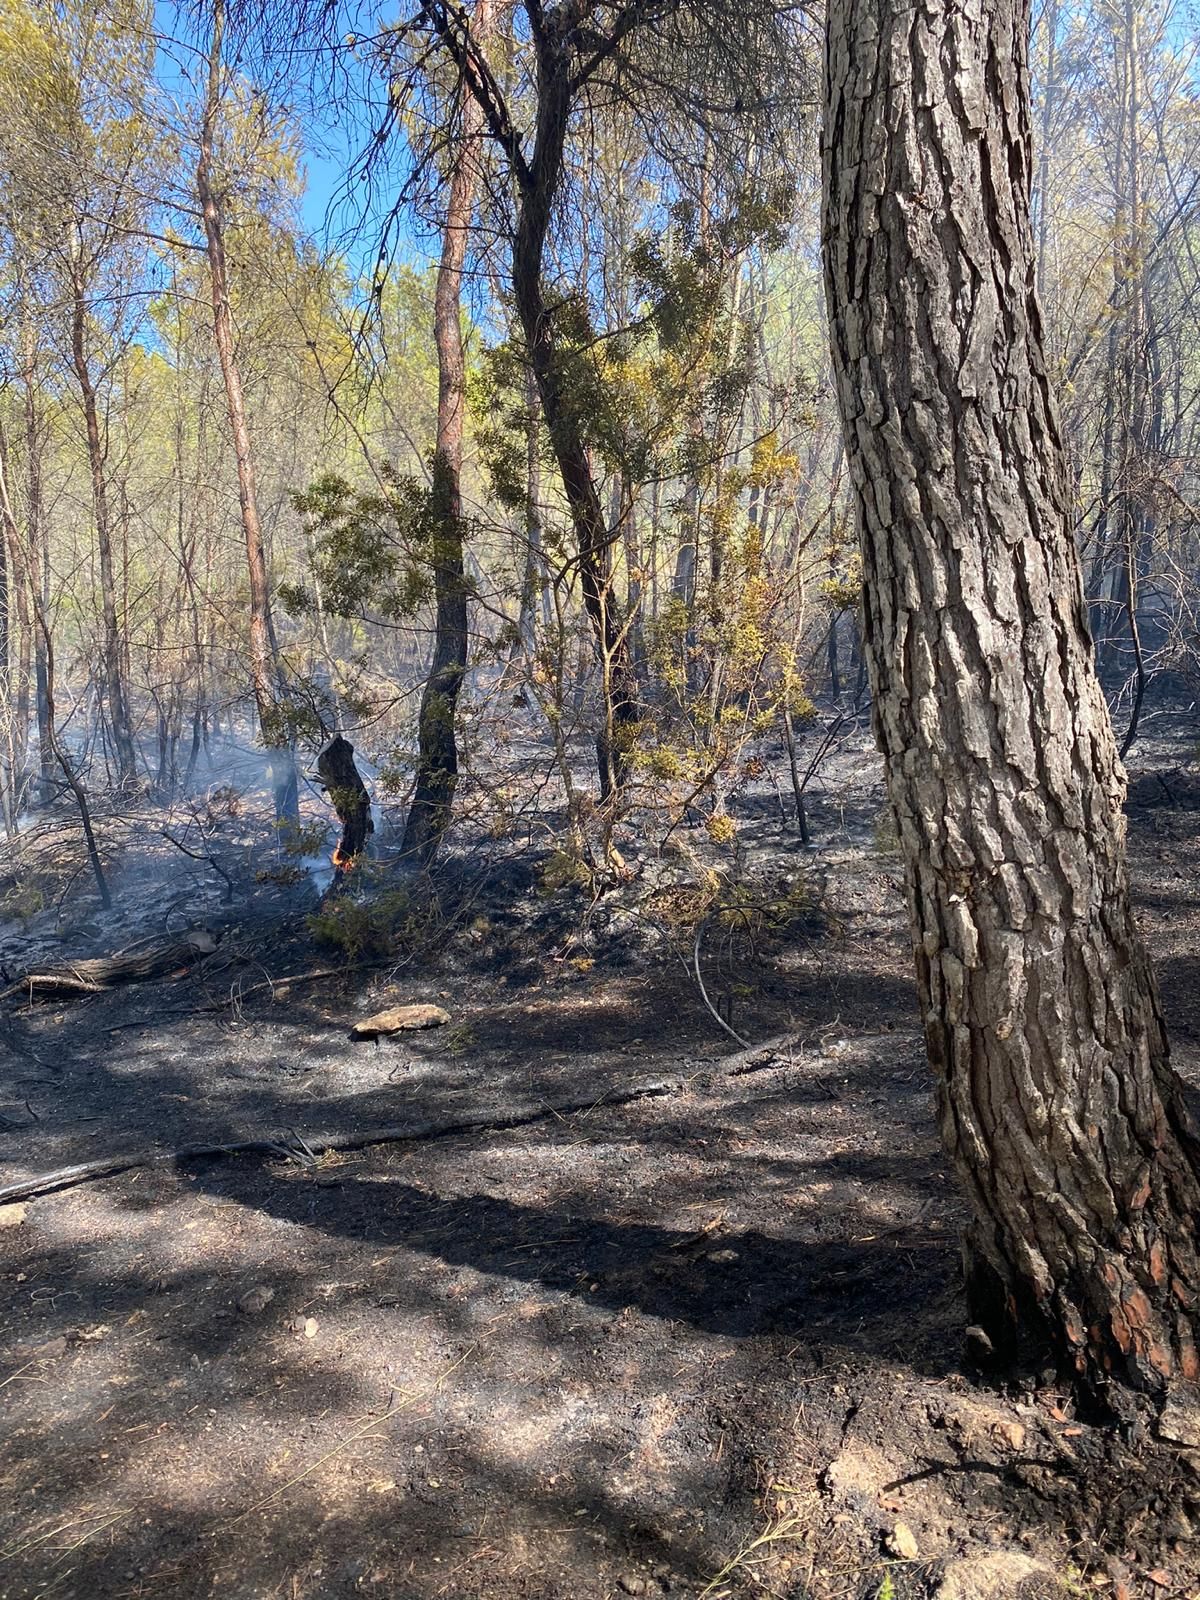 Declarado un incendio forestal en Santa Eulària